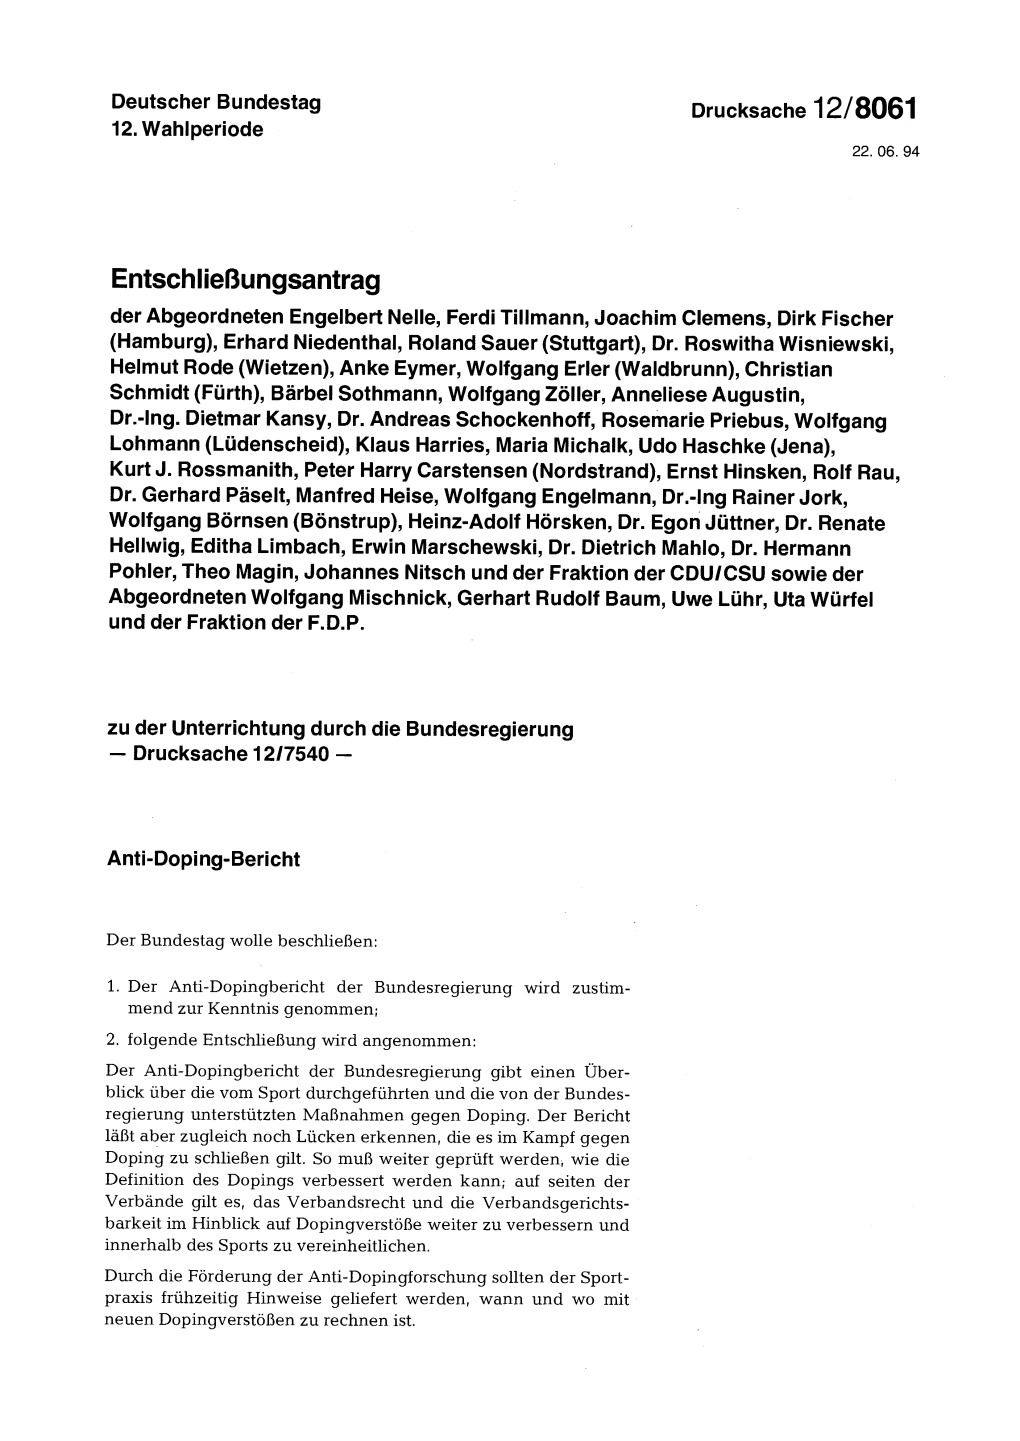 Entschließungsantrag Der Abgeordneten Engelbert Nelle, Ferdi Tillmann, Joachim Clemens, Dirk Fischer (Hamburg), Erhard Niedenthal, Roland Sauer (Stuttgart), Dr